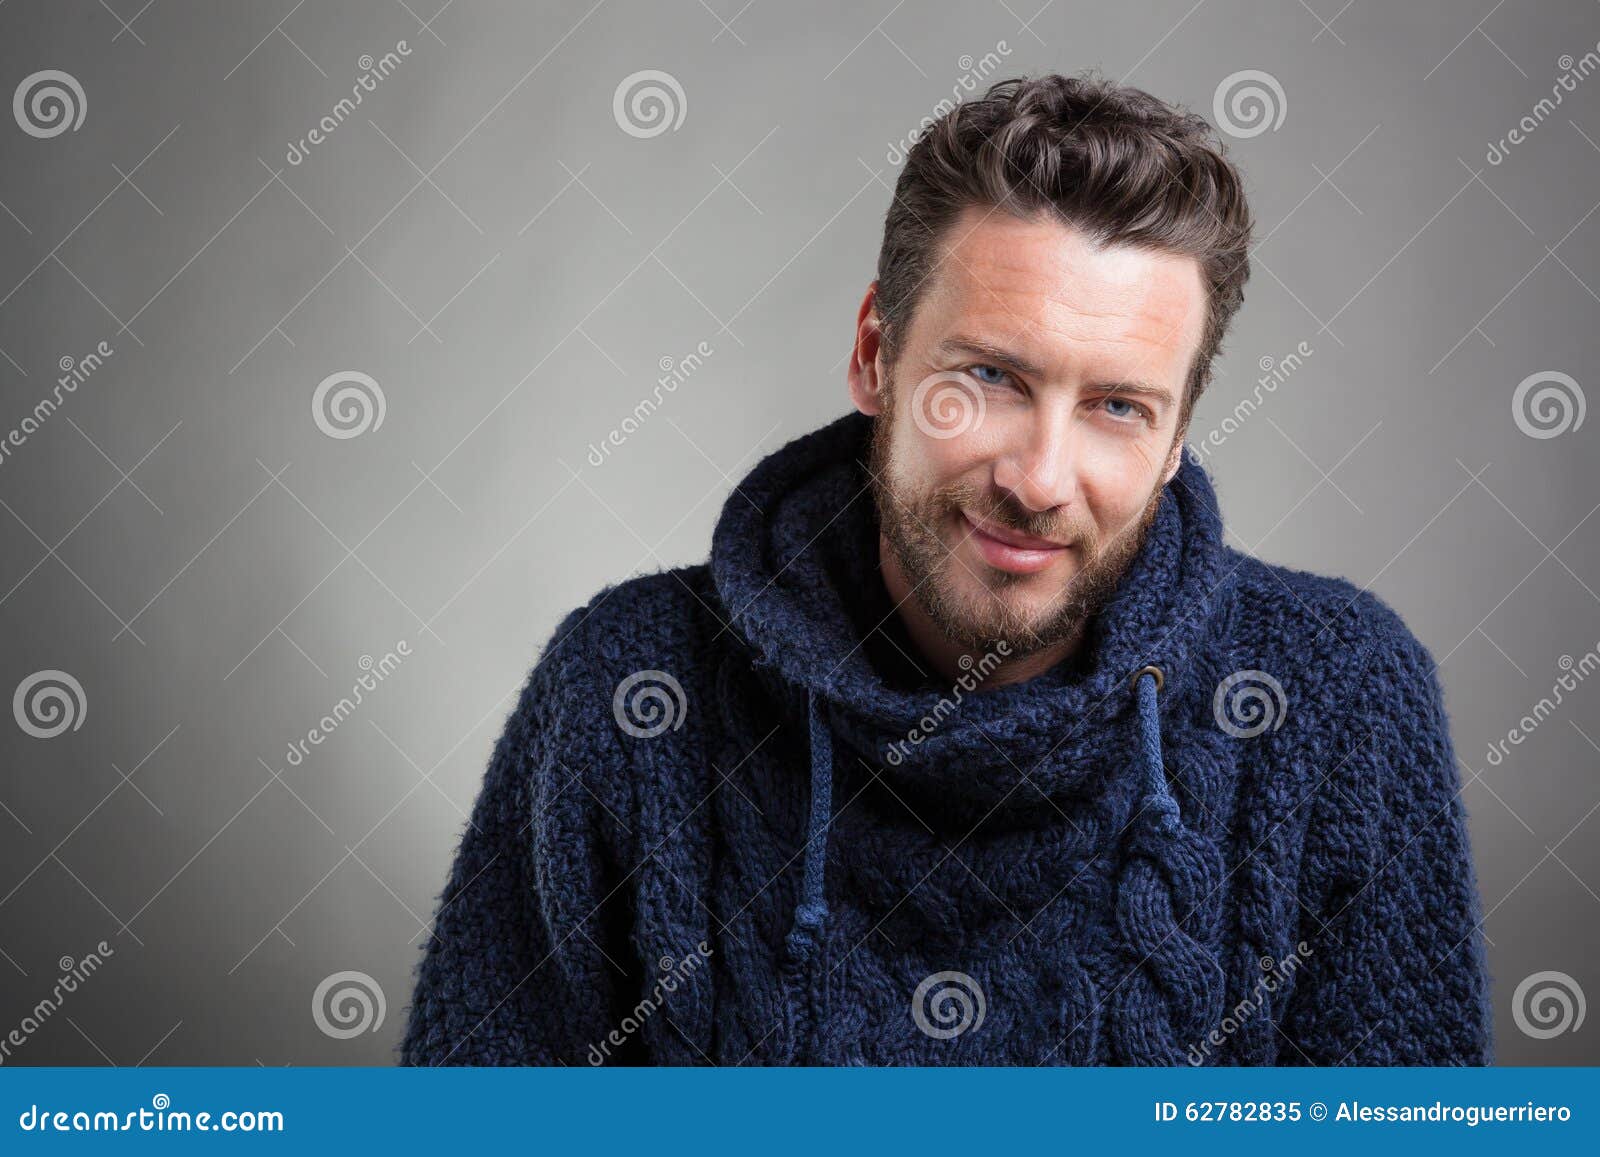 Bearded Man Wearing Blue Sweater Stock Image - Image of gaze, eyes ...